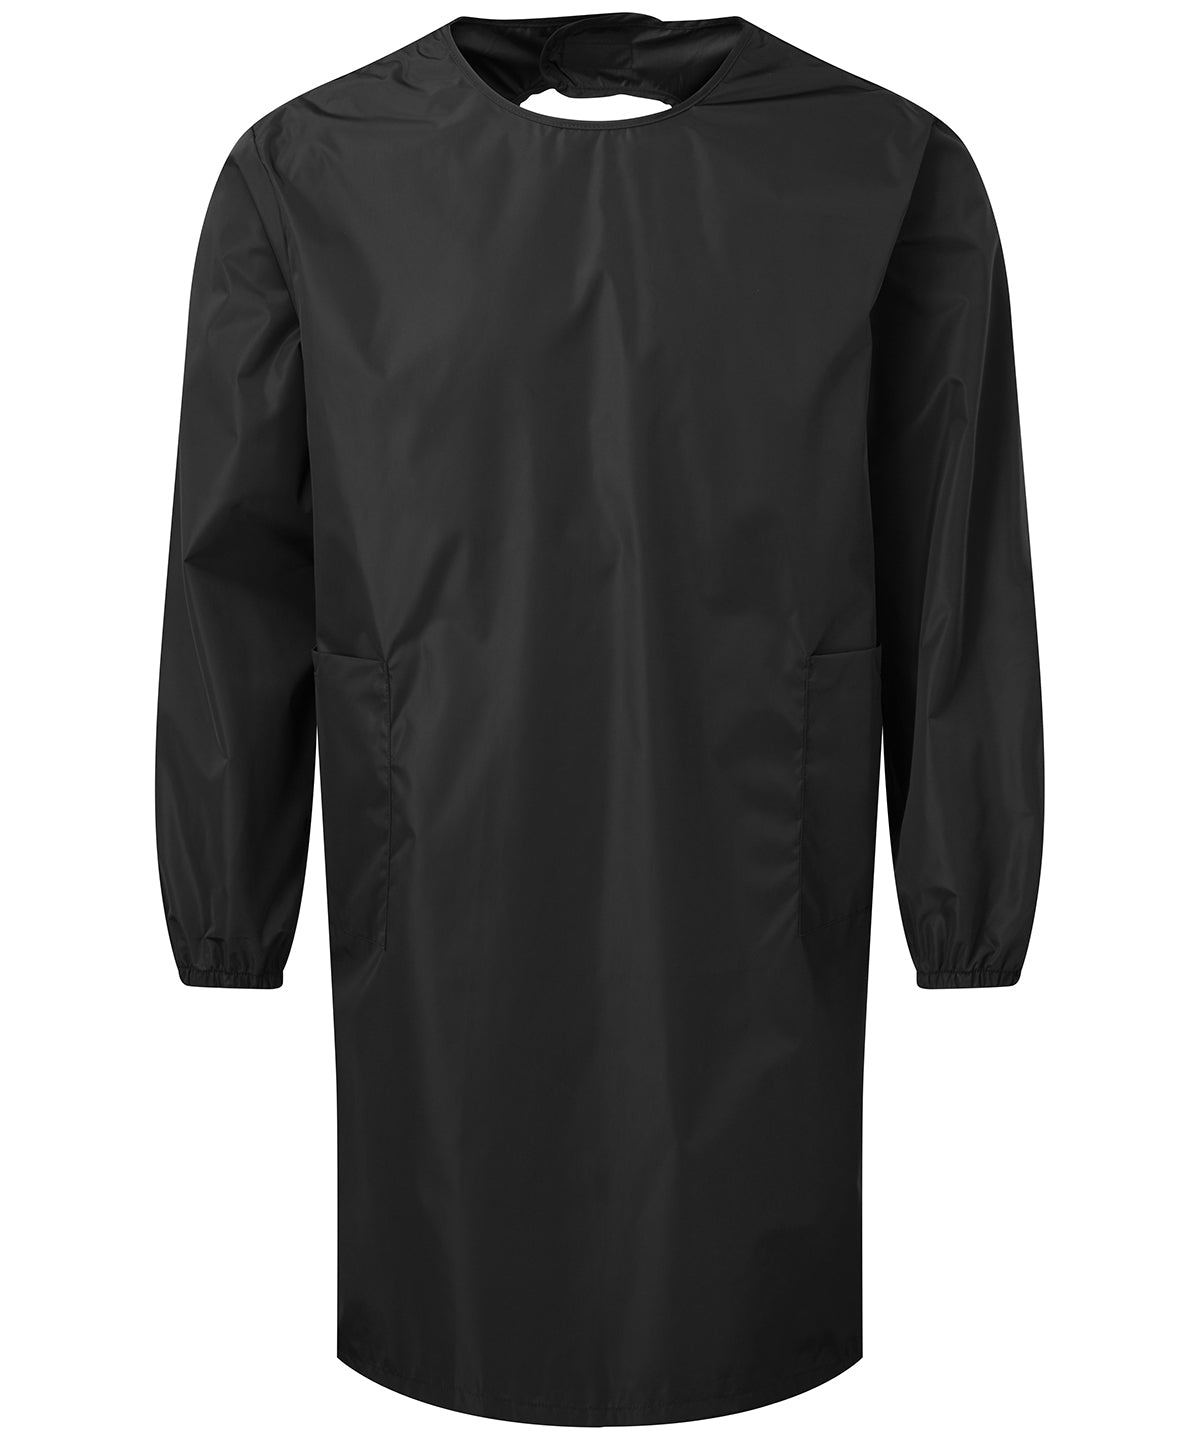 Premier All-purpose waterproof gown